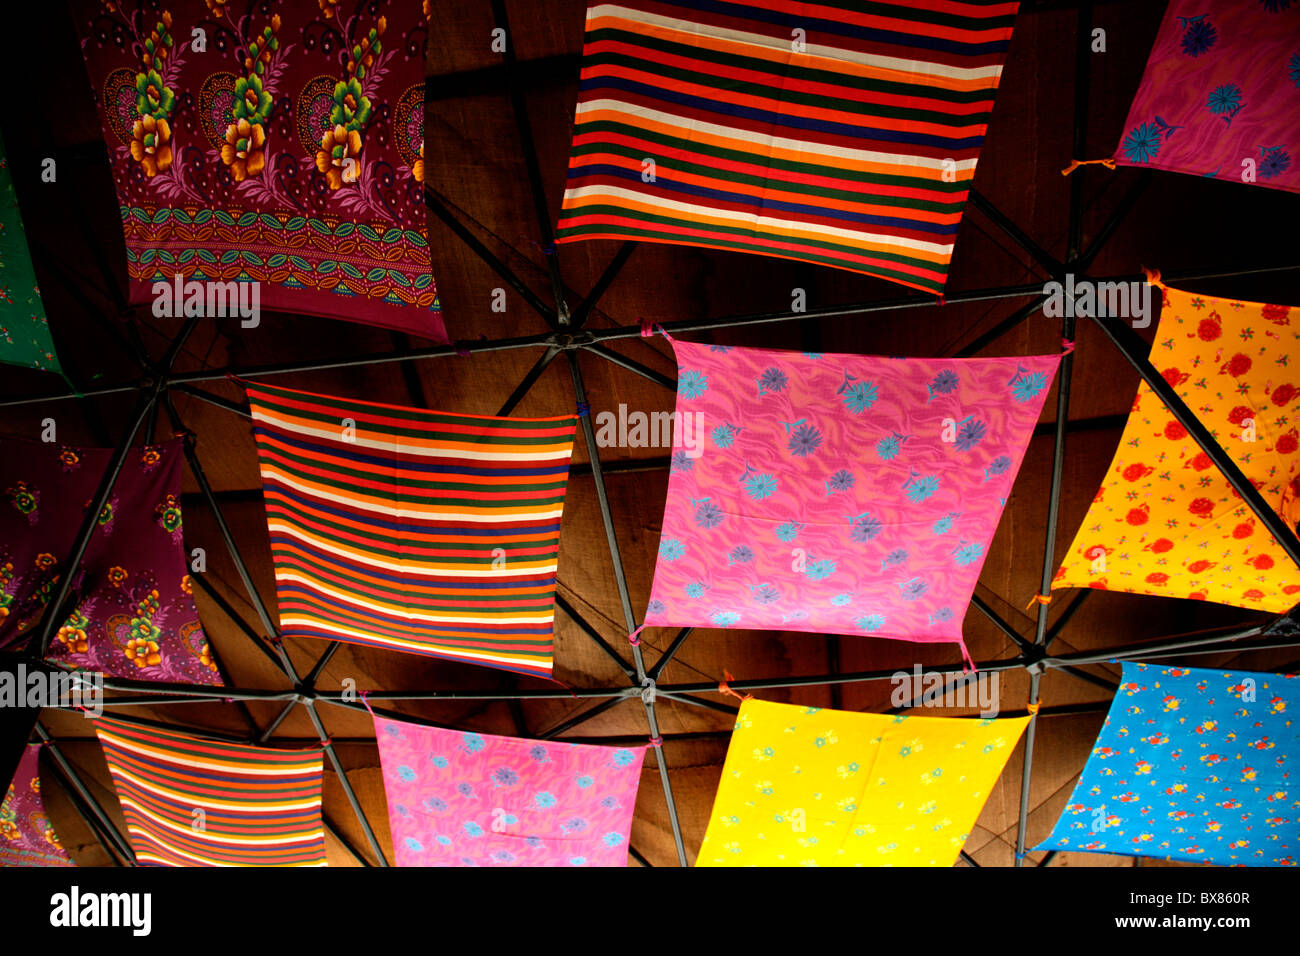 Unterschiedliche Gestaltung der Tücher angeordnet, um ein Dach Decke im  Inneren des Hauses schmücken Stockfotografie - Alamy